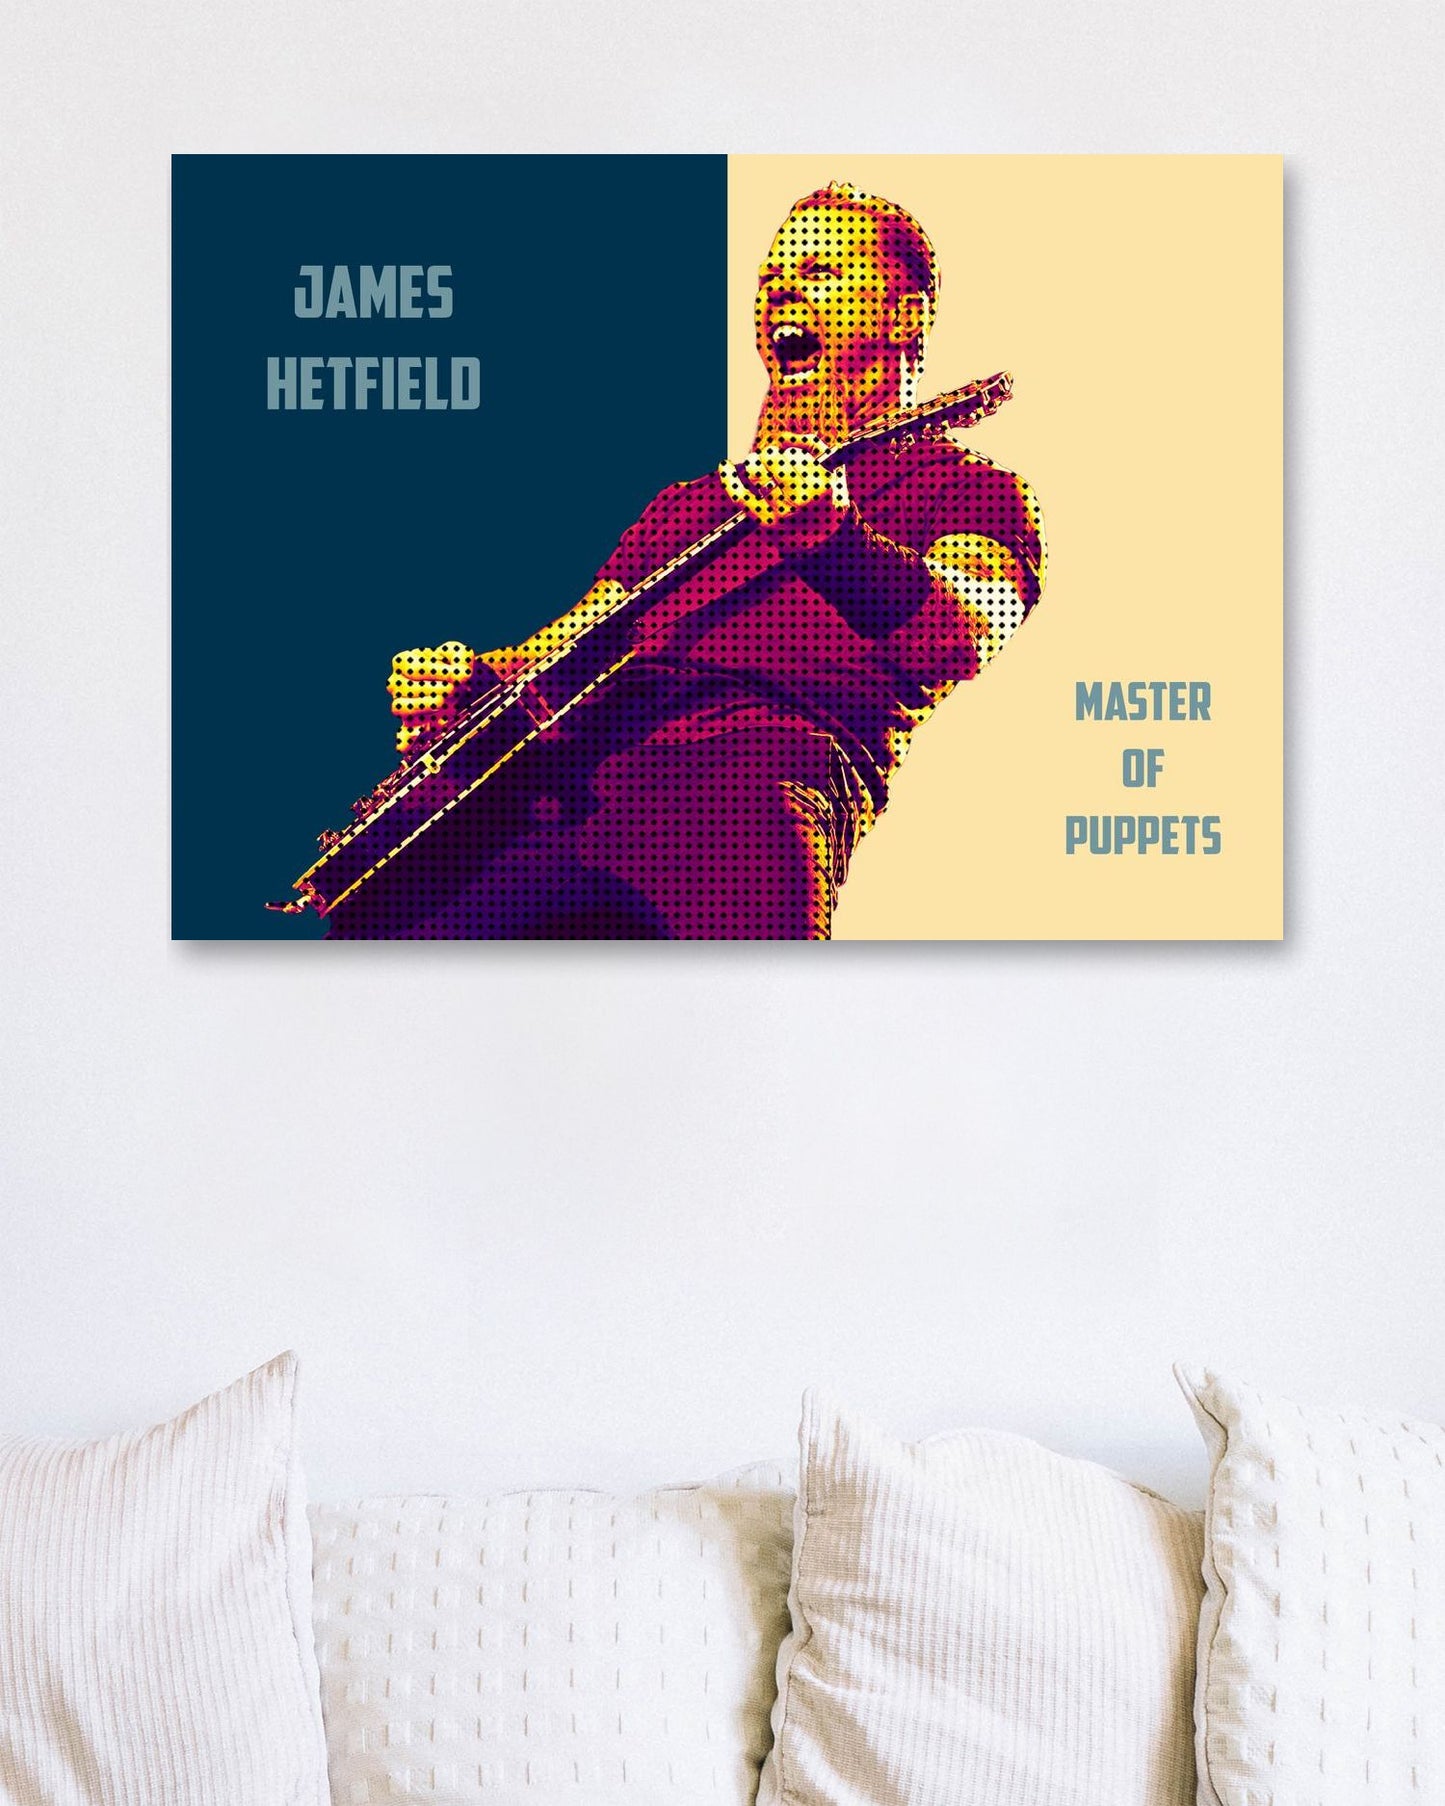 James Hetfield - @LegendArt